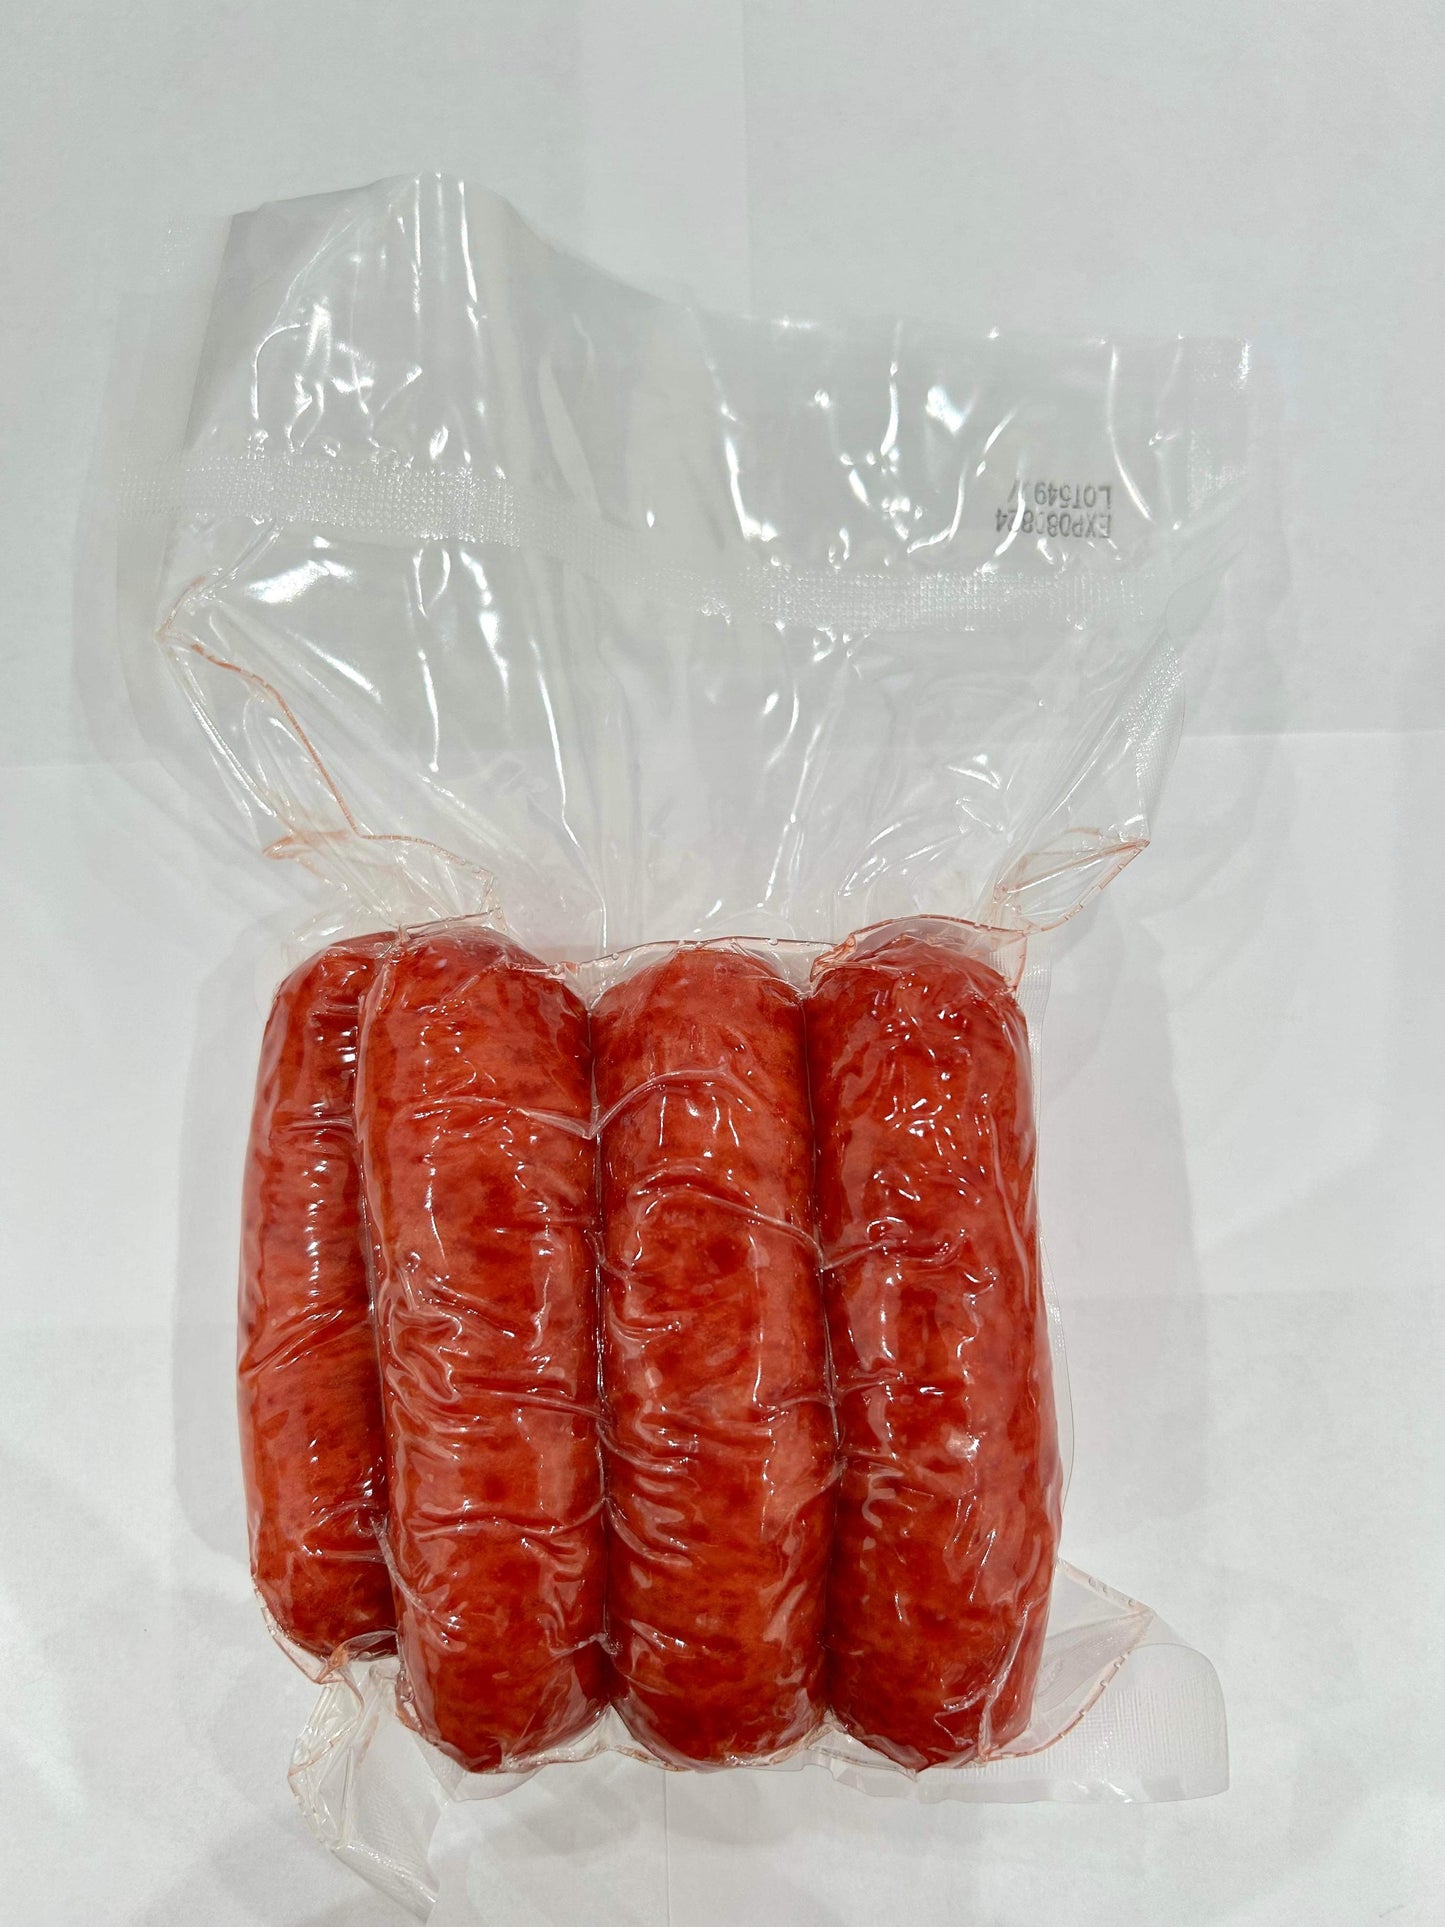 Lạp Xưởng Mai Quế Lộ Heo Cay Houston 16 oz | Houston Spicy Pork Sausage